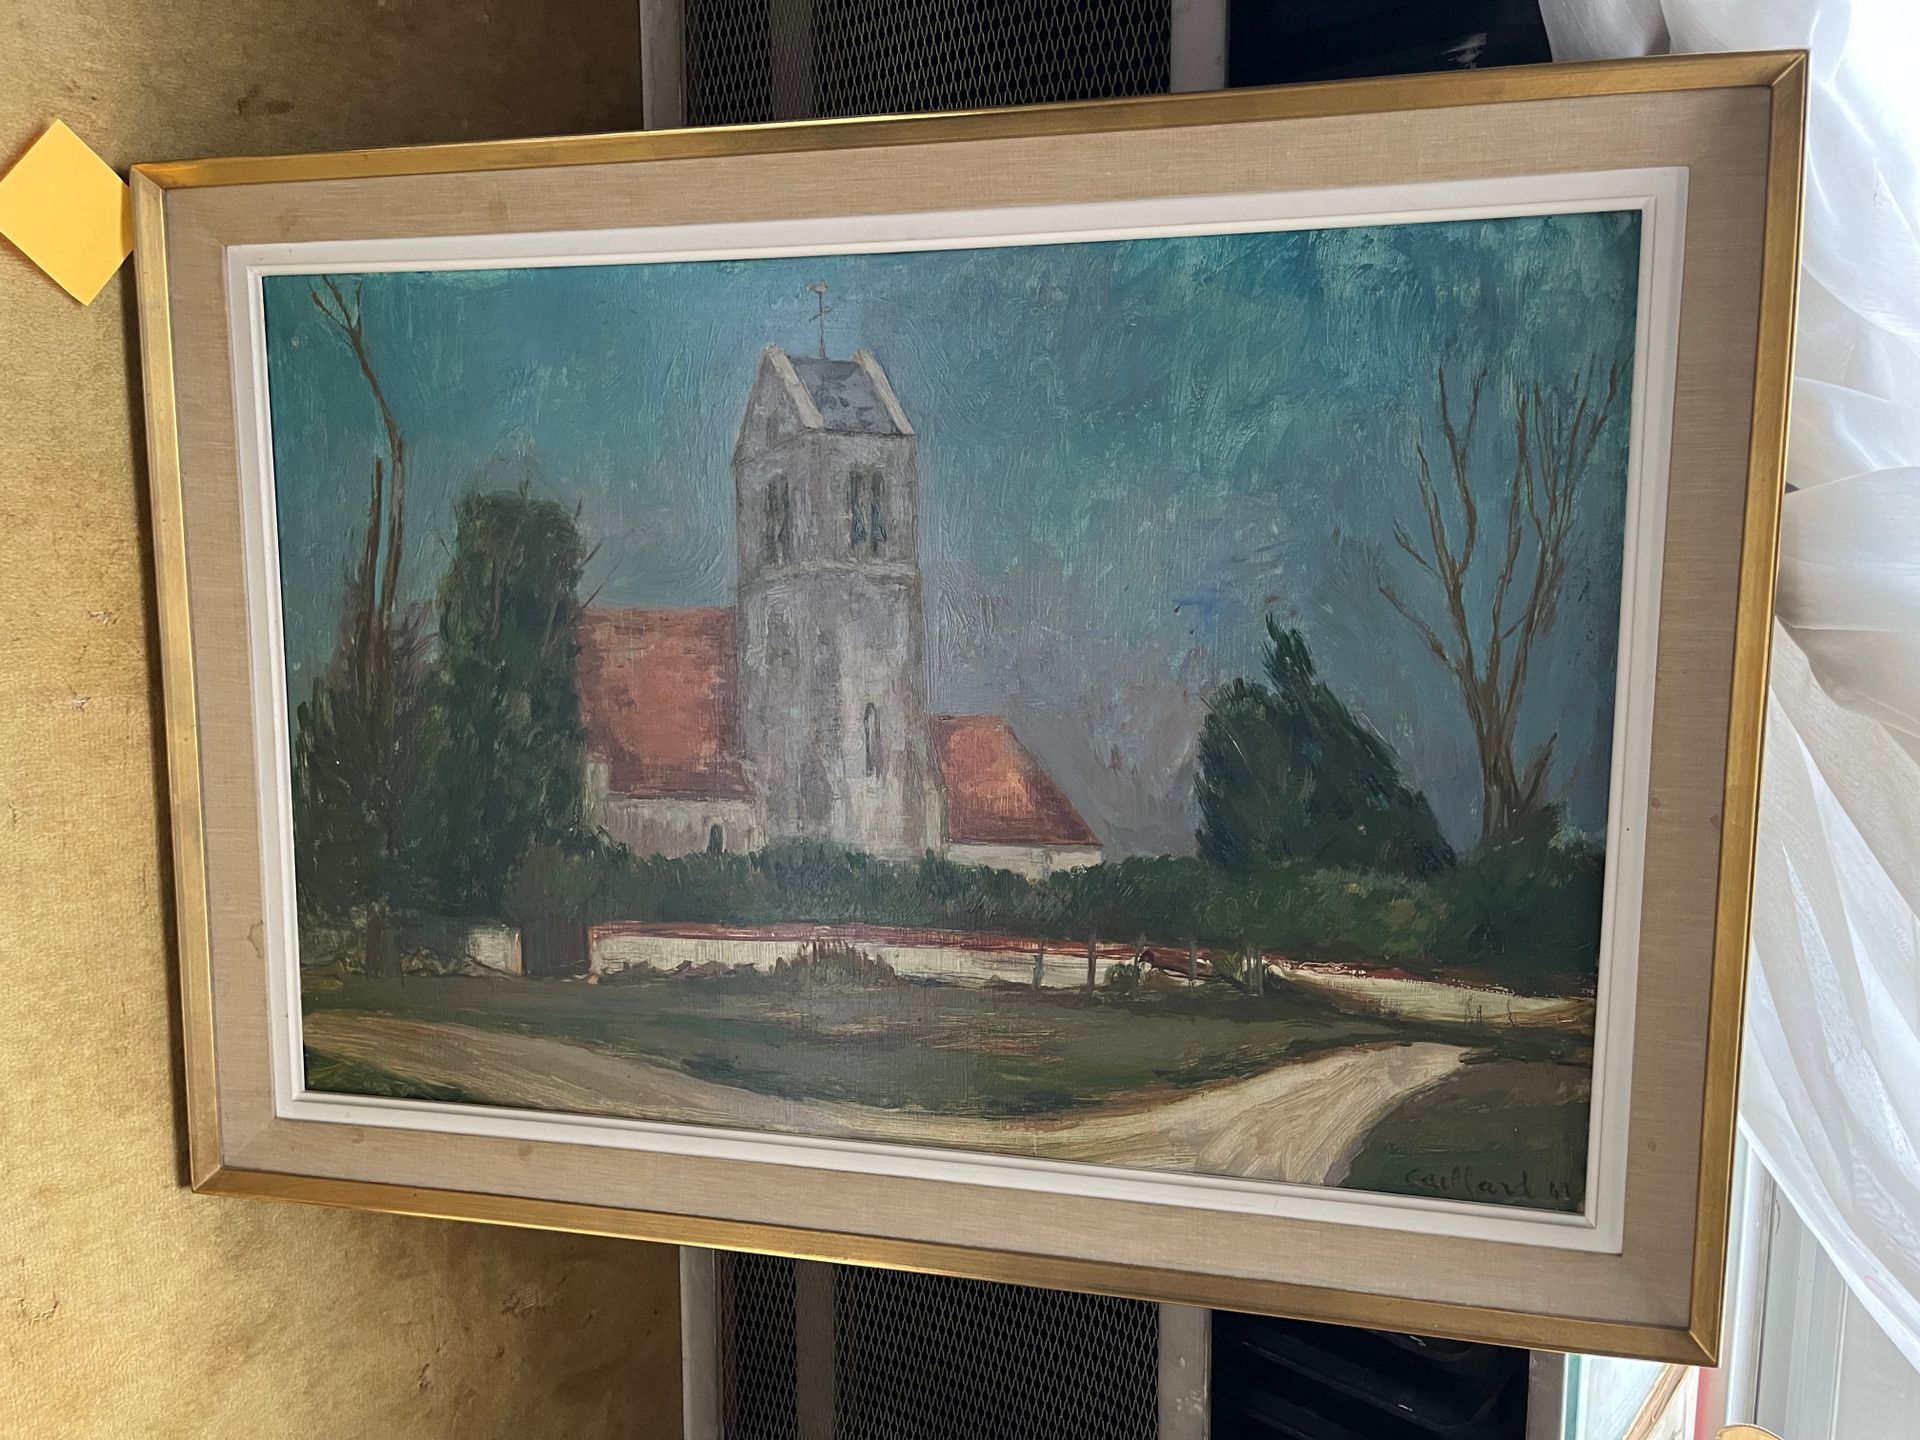 Christian Hugues CAILLARD (1899-1985) 教堂广场
布面油画，右下方有签名，日期为41。
54,5 x 81 cm